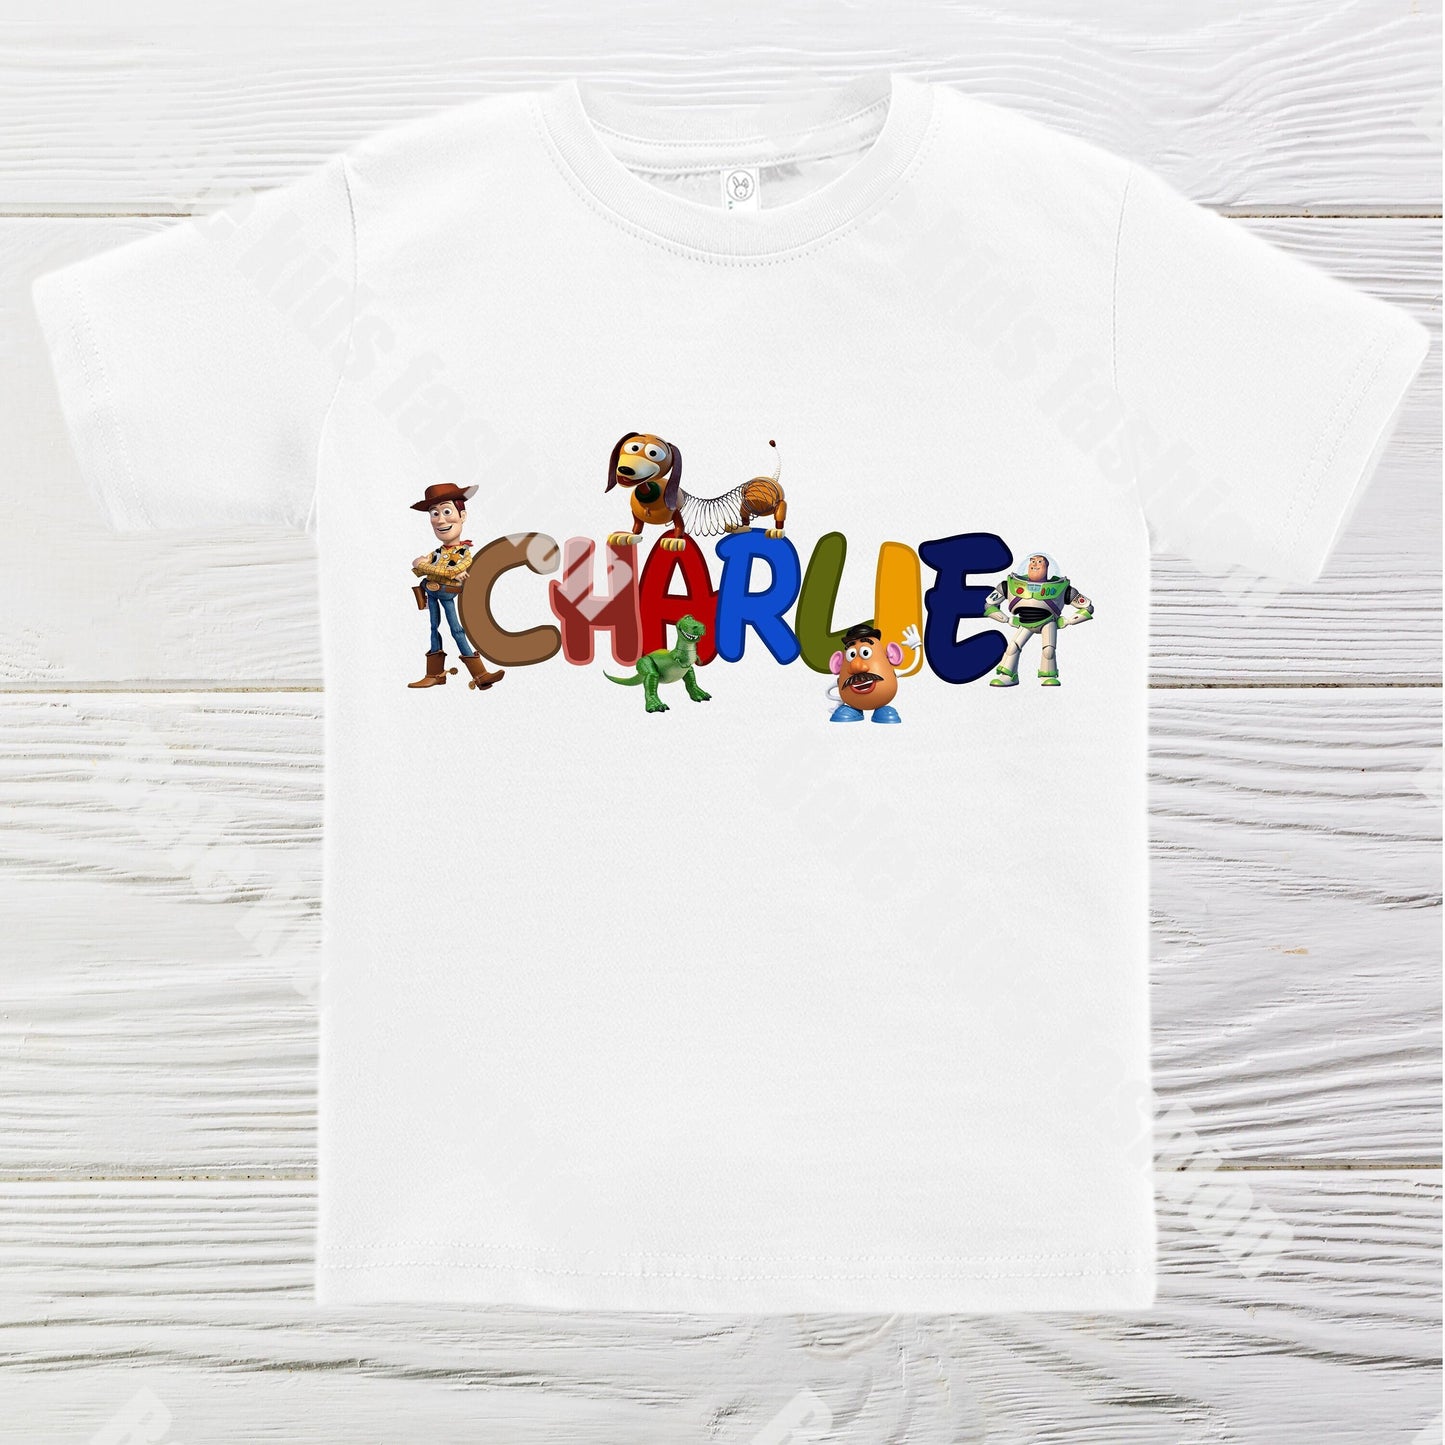 Toy Story birthday shirt